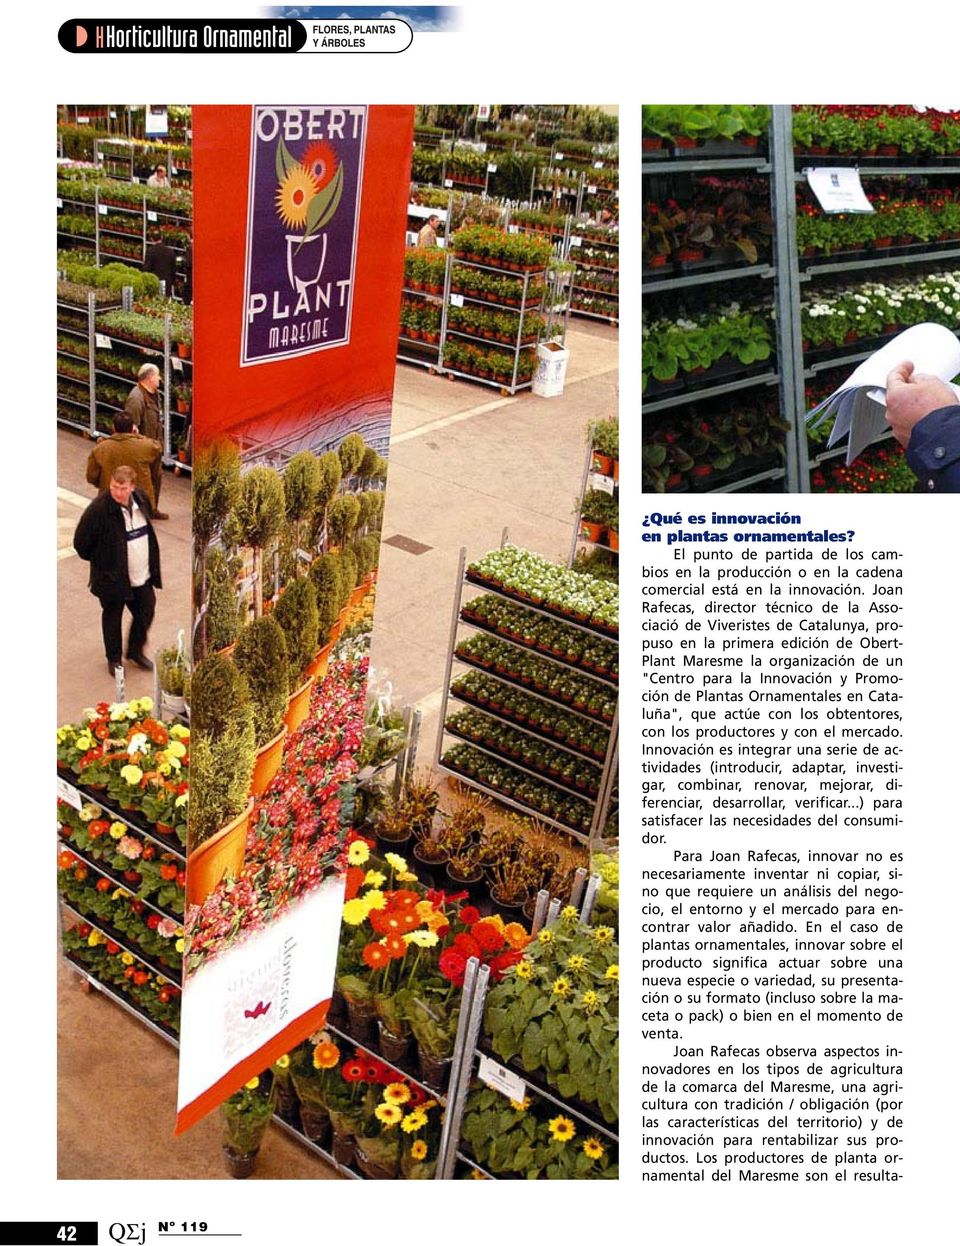 Plantas Ornamentales en Cataluña", que actúe con los obtentores, con los productores y con el mercado.